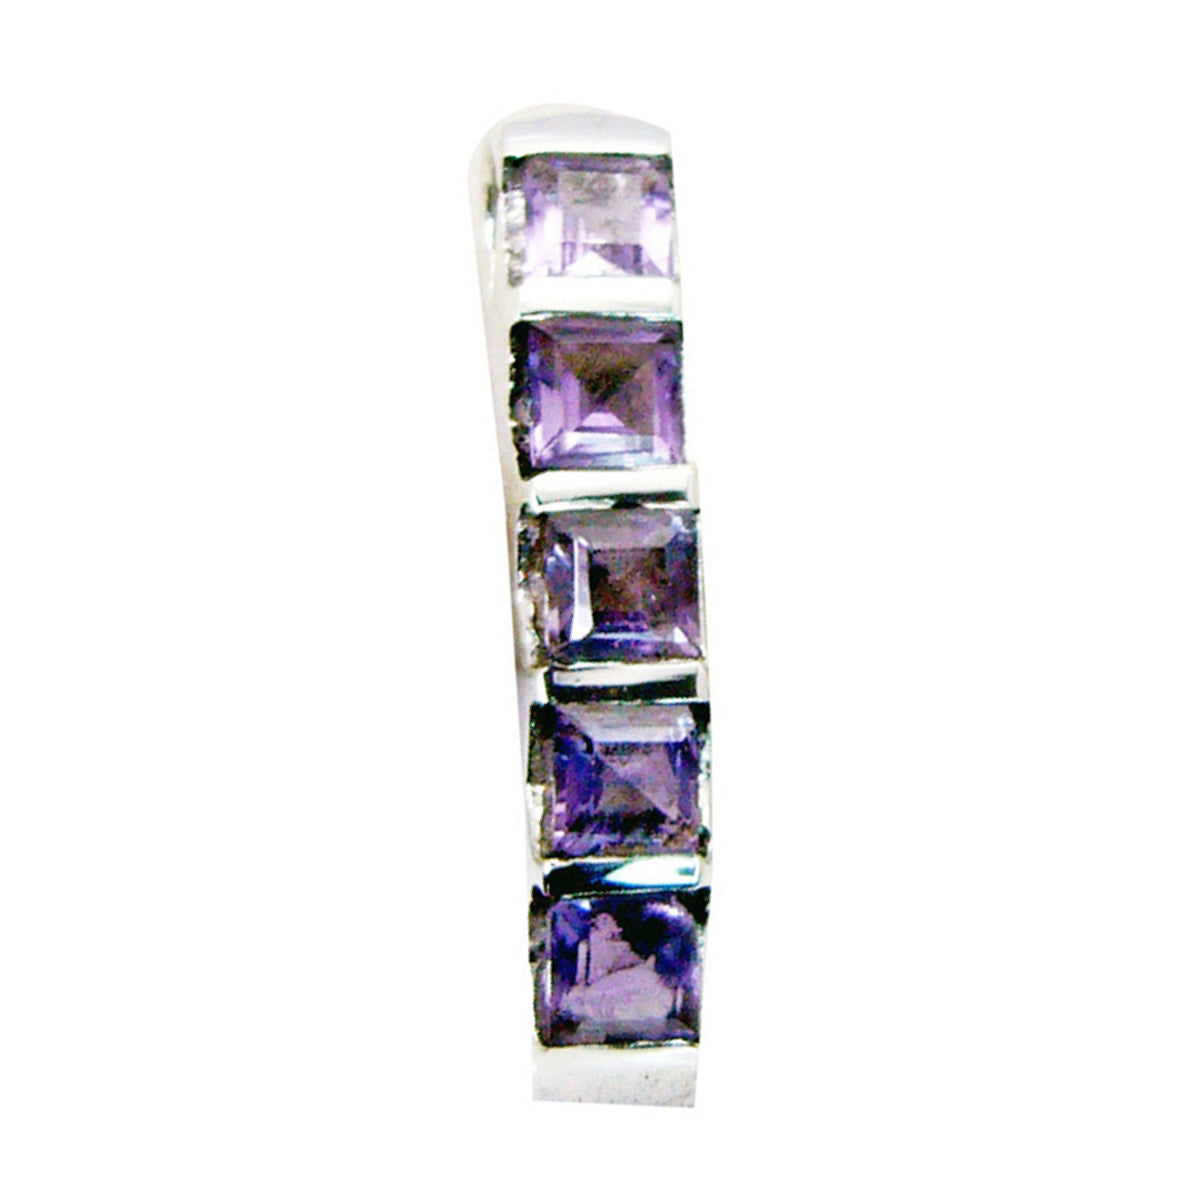 Riyo magníficas gemas ovaladas facetadas amatista púrpura colgante de plata regalo para el día del boxeo